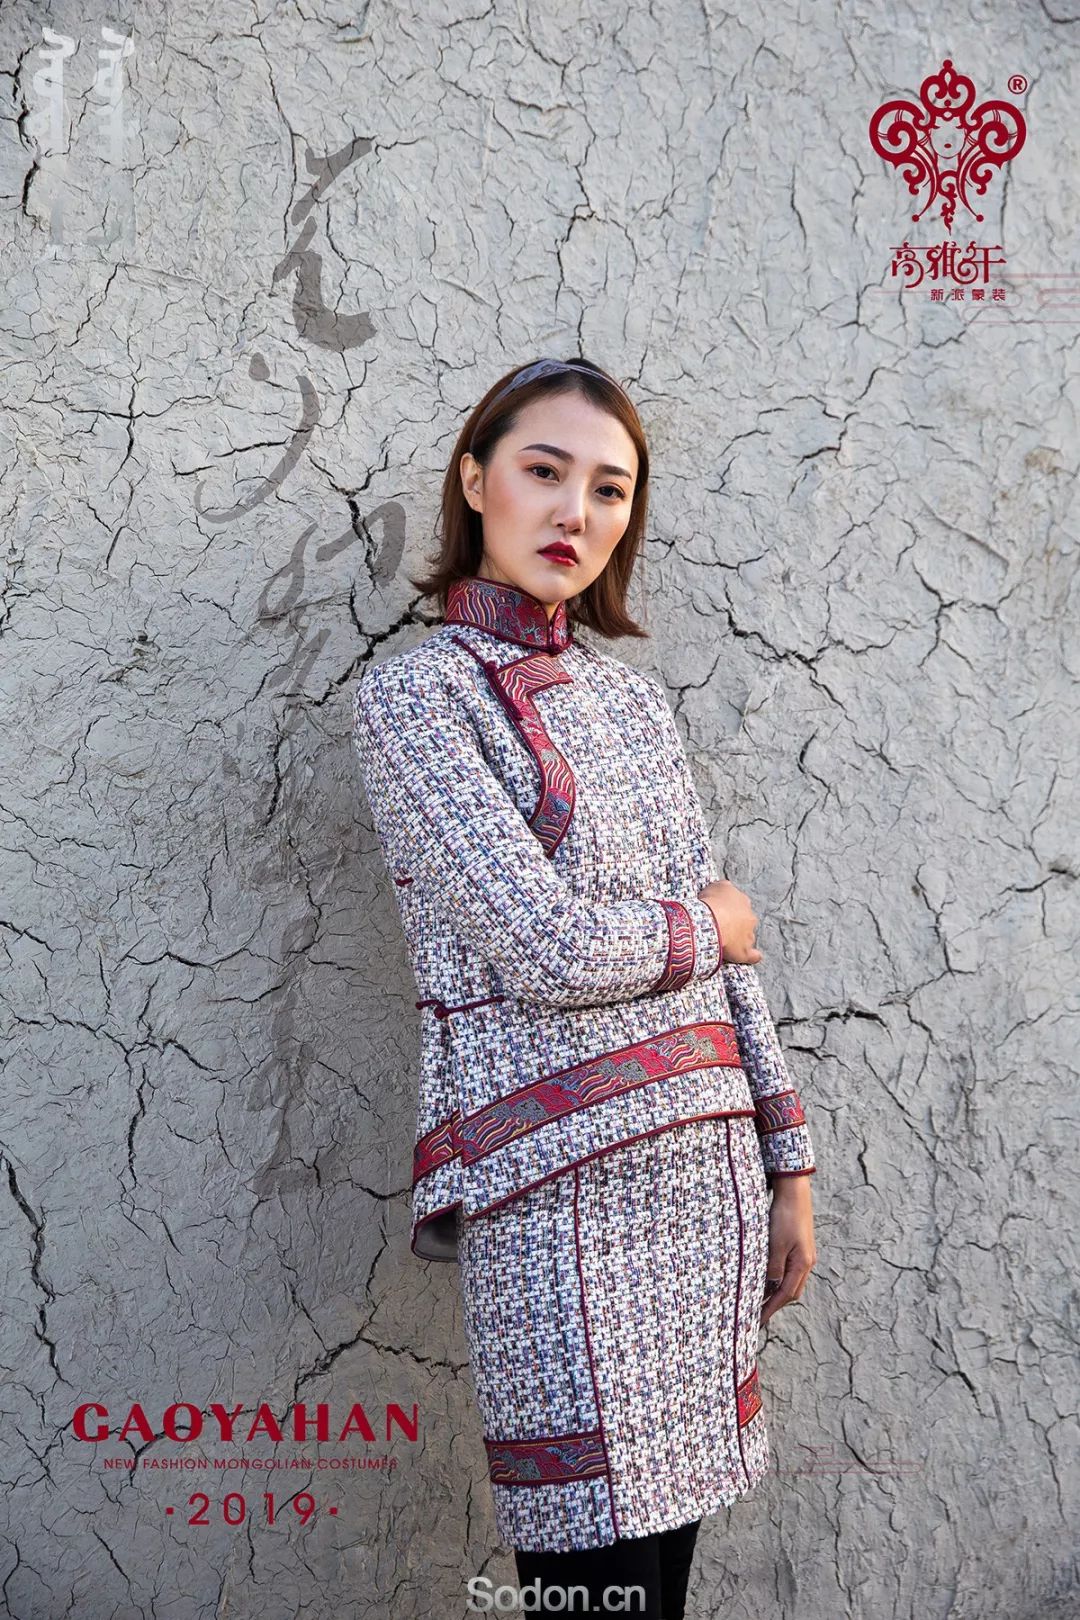 蒙古族服饰正在引领世界时尚新潮流_中国网